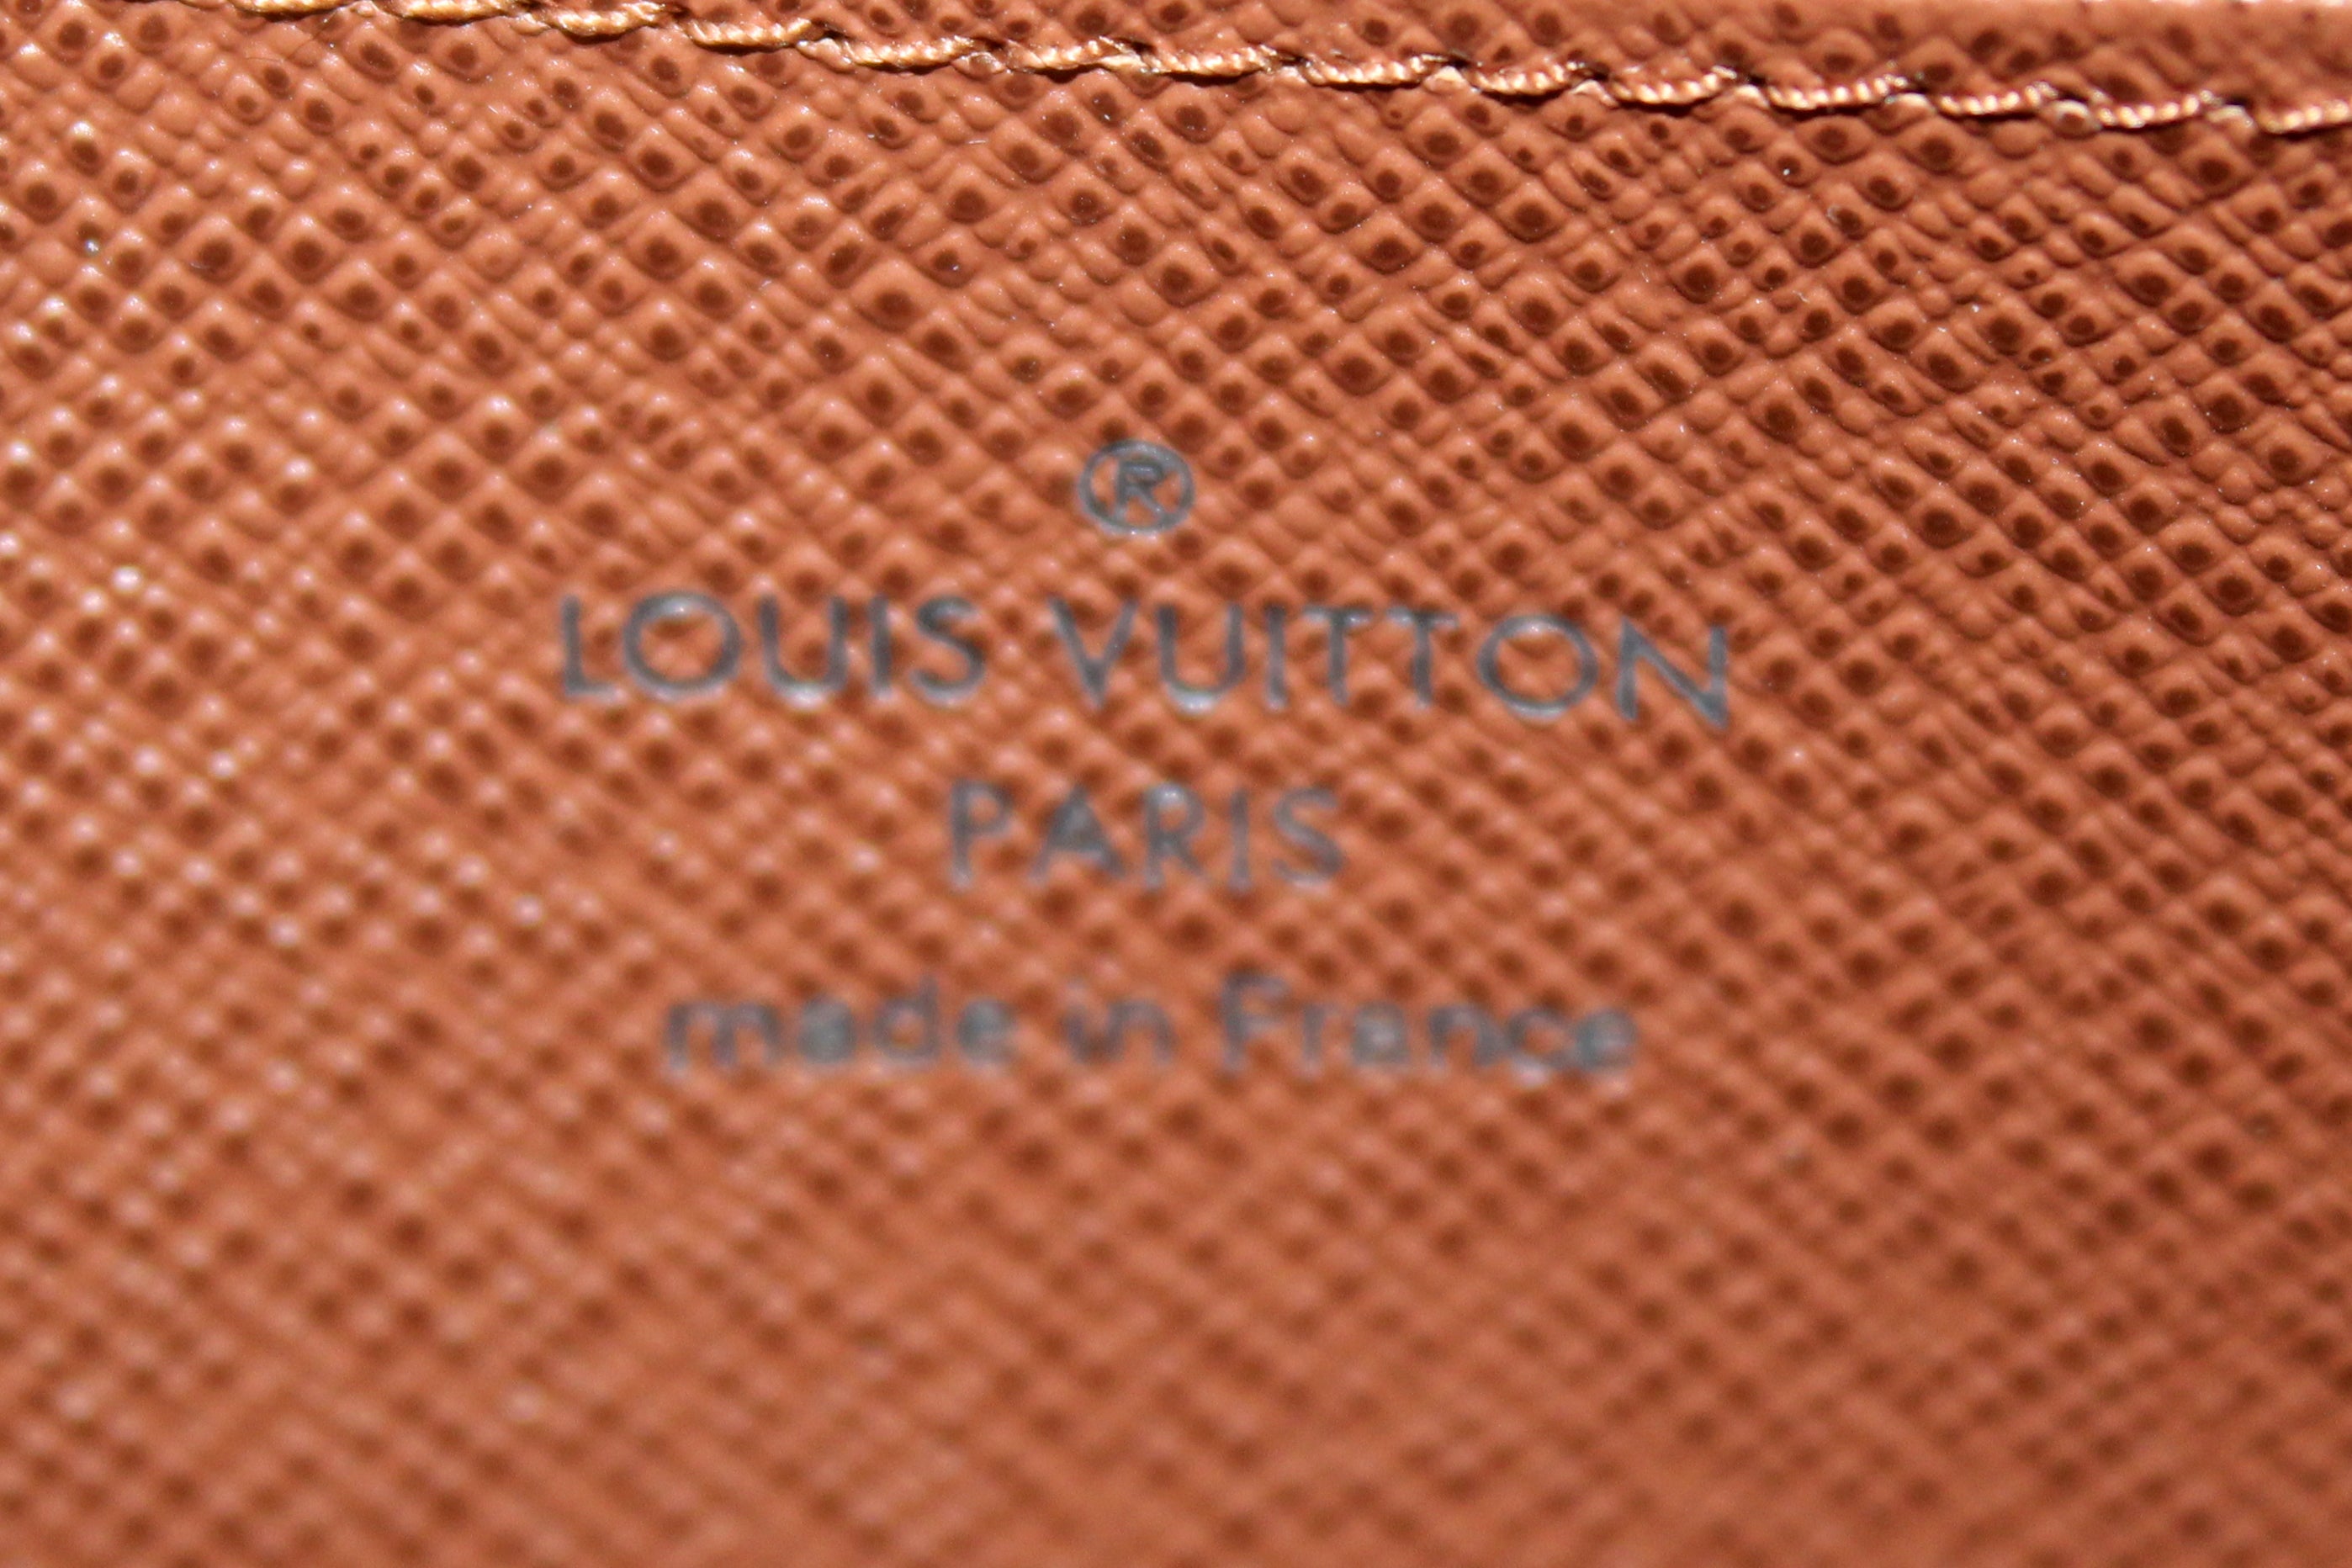 Authentic Louis Vuitton Classic Monogram Zippy Coin Purse